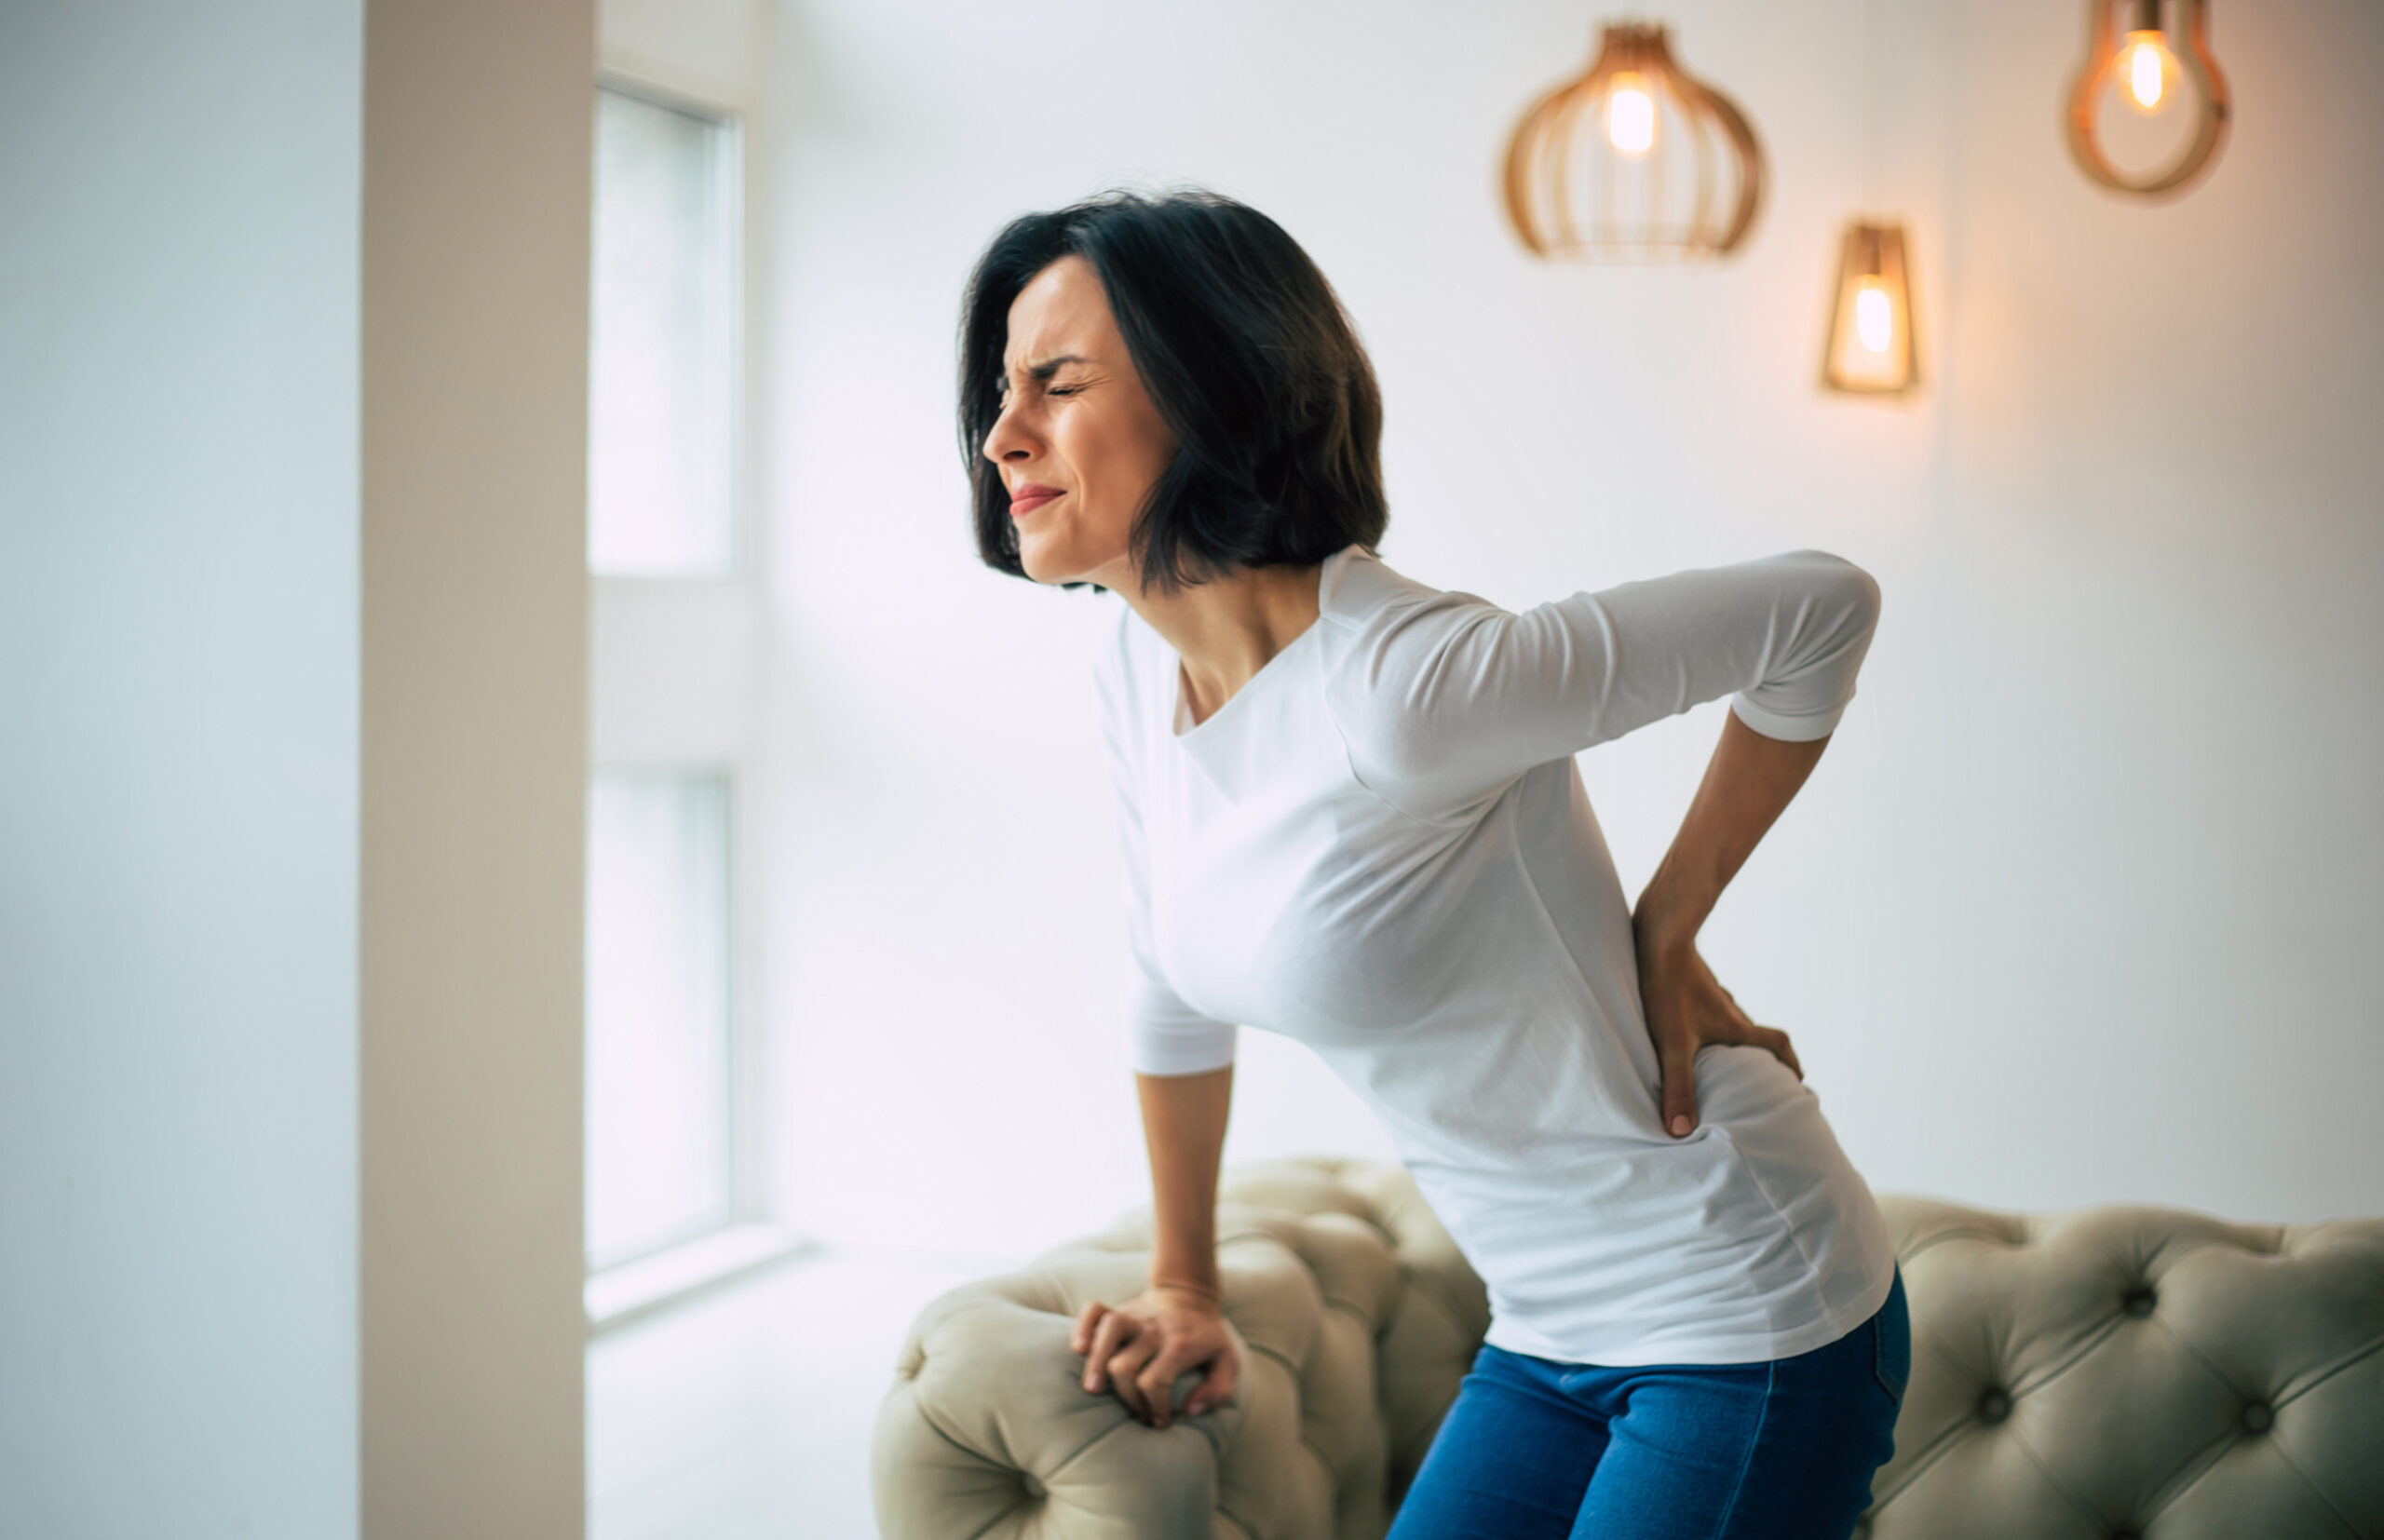 Atente-se à postura: seu celular pode promover dores constantes no corpo